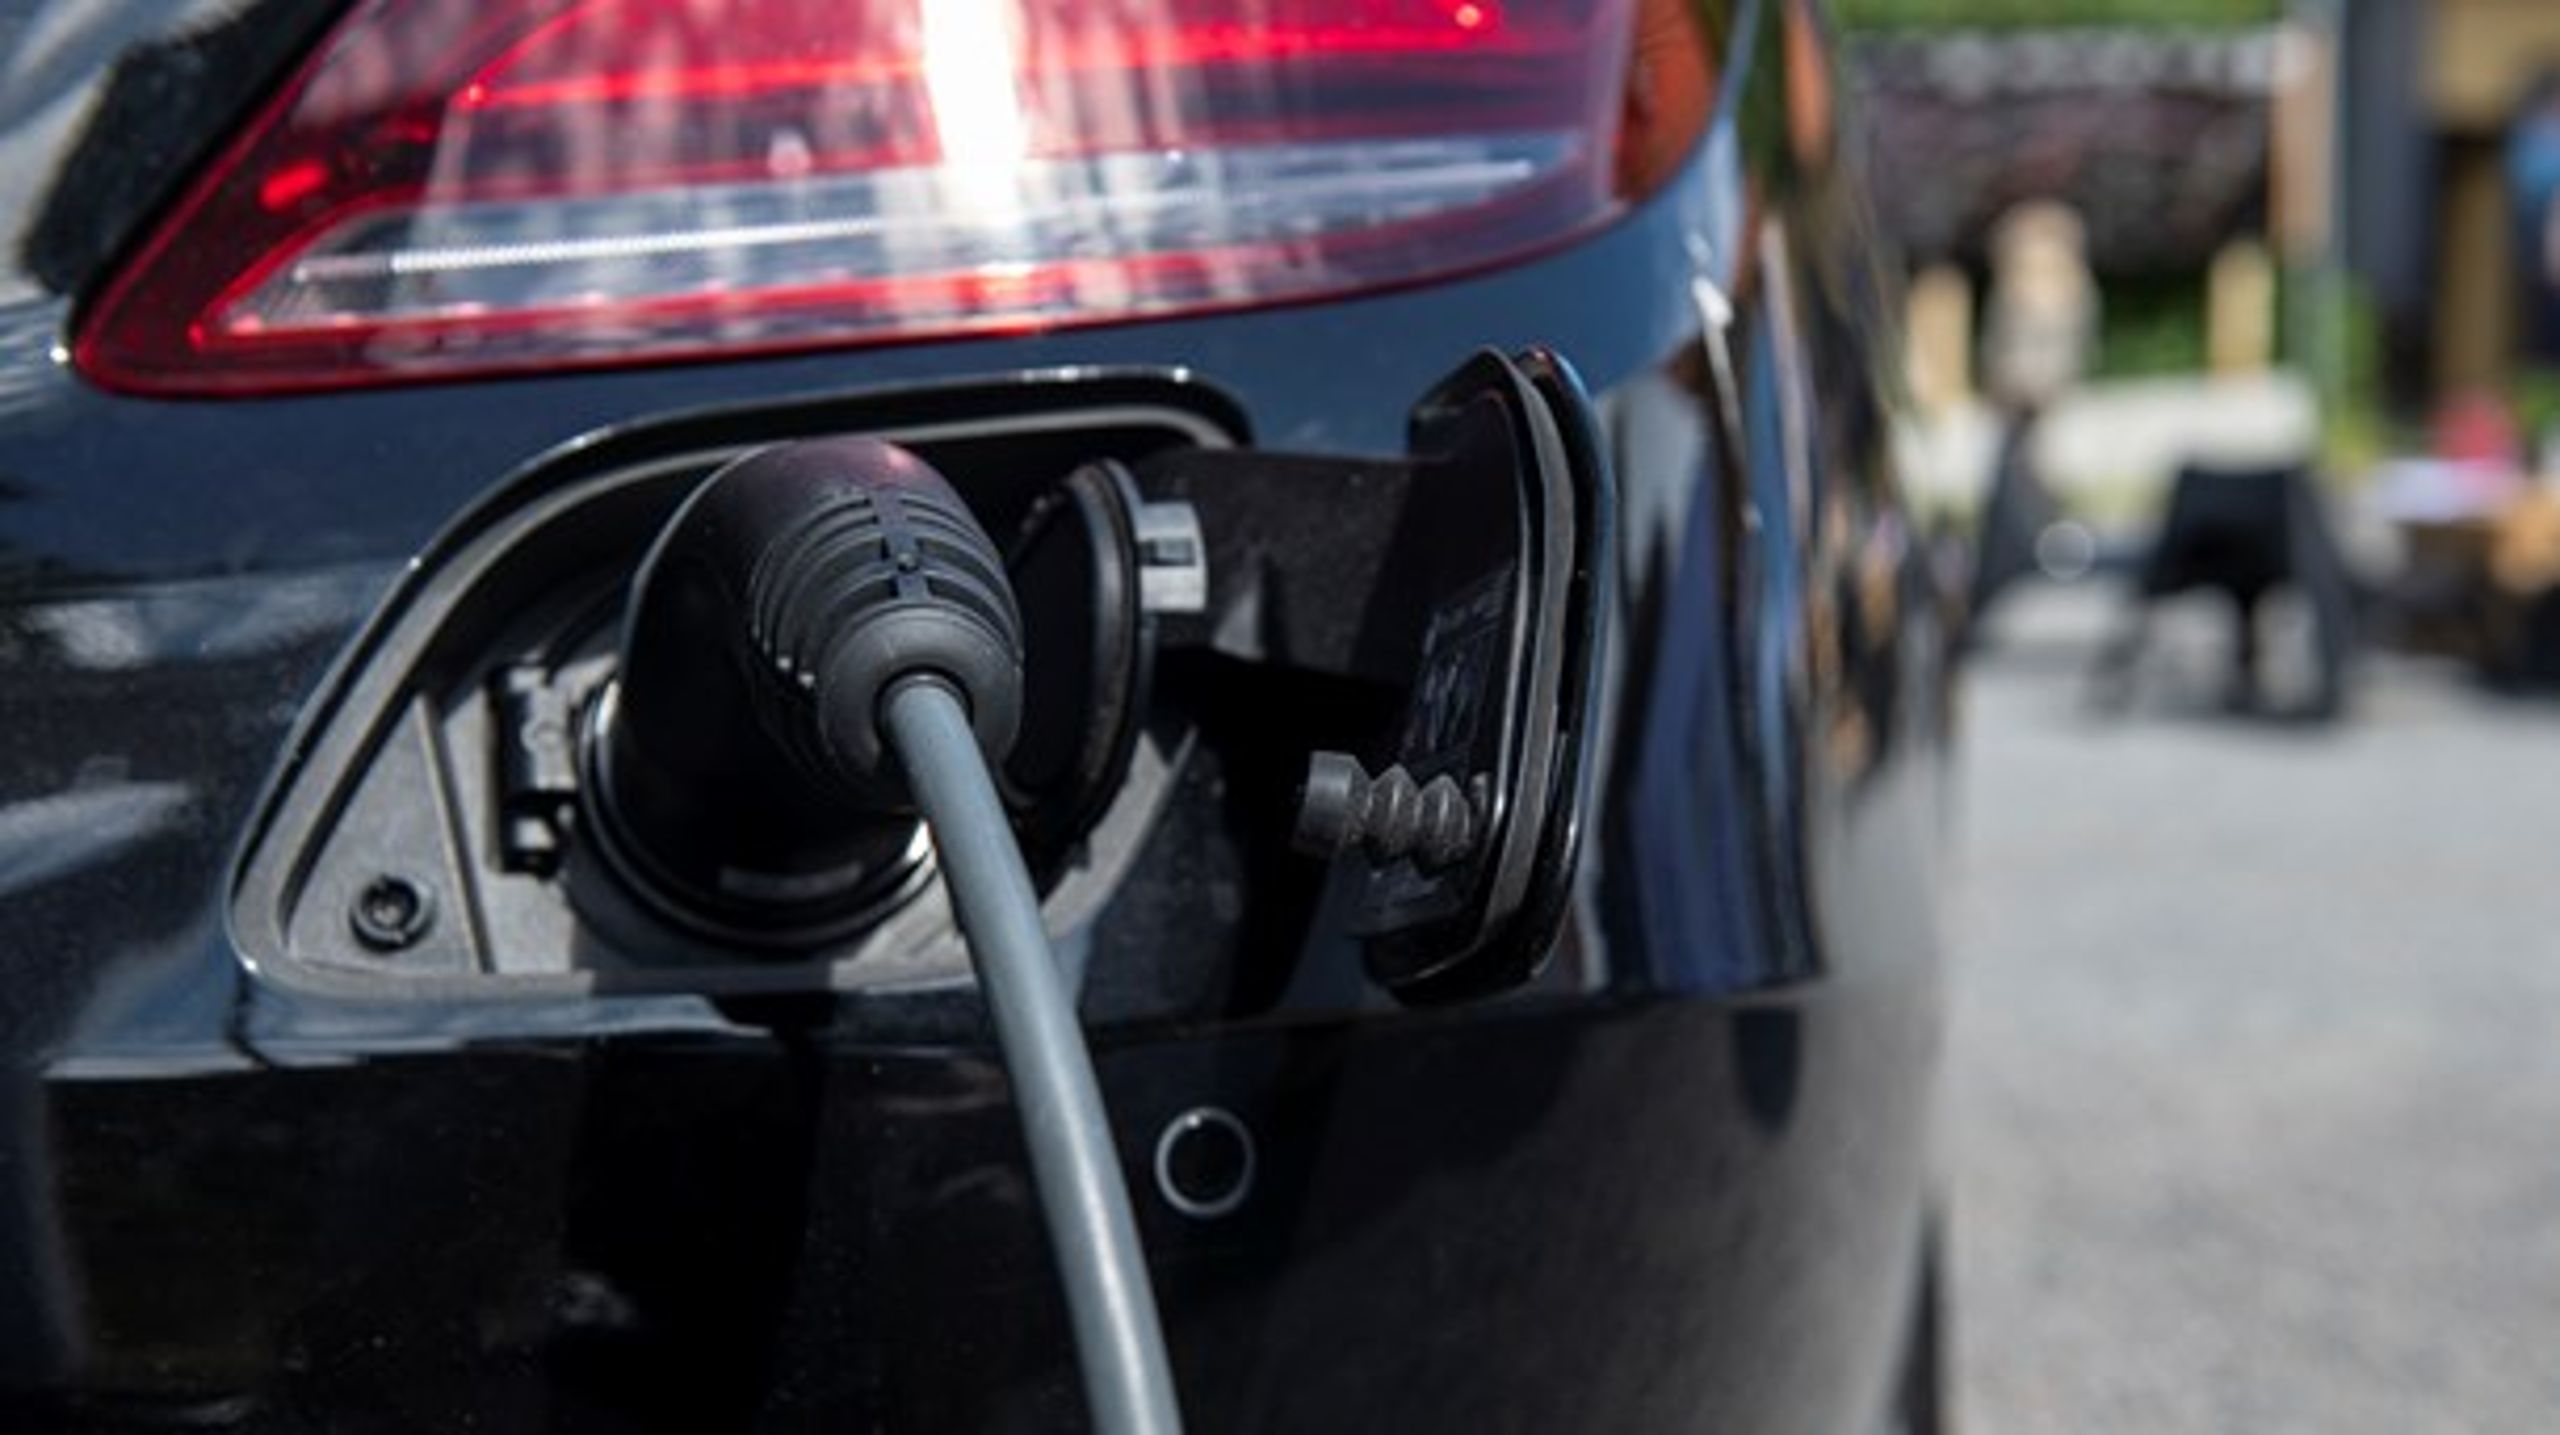 Benzinbiler, der udleder 44 procent mere CO2 end den elektrificerede hybridbil i samme størrelse, vil stige 3.100 kroner i pris over 15 år, mens hybridbilen vil stige hele 34.100 kroner, skriver Anders Tystrup.